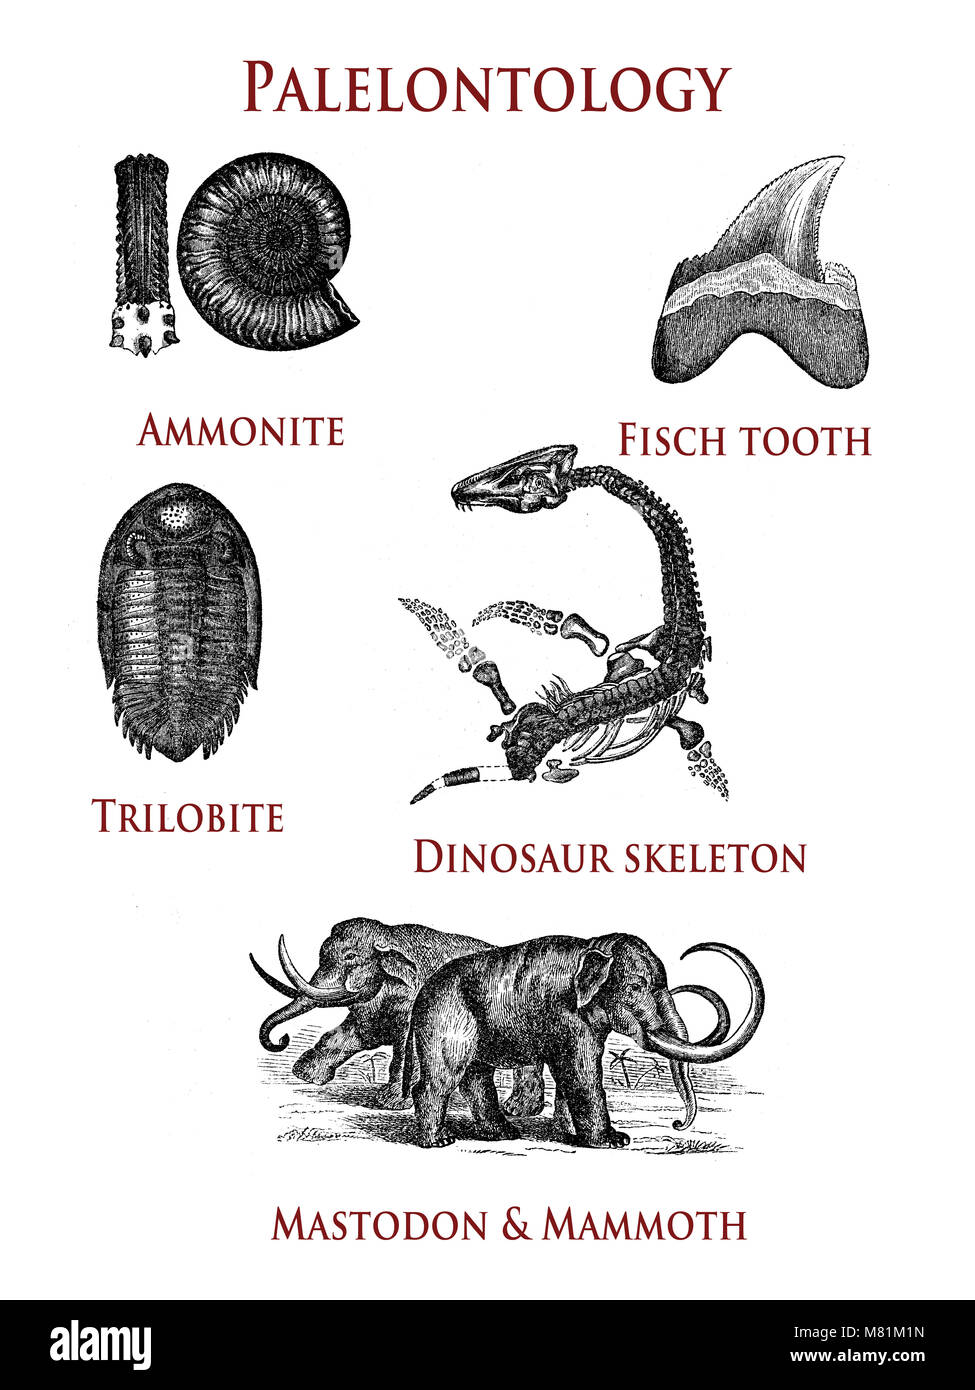 La paléontologie vintage illustration de spécimens d'animaux préhistoriques : ammonite, trilobite dent, poisson, squelette de dinosaure et d'une reconstruction de mammouth et mastodon Banque D'Images